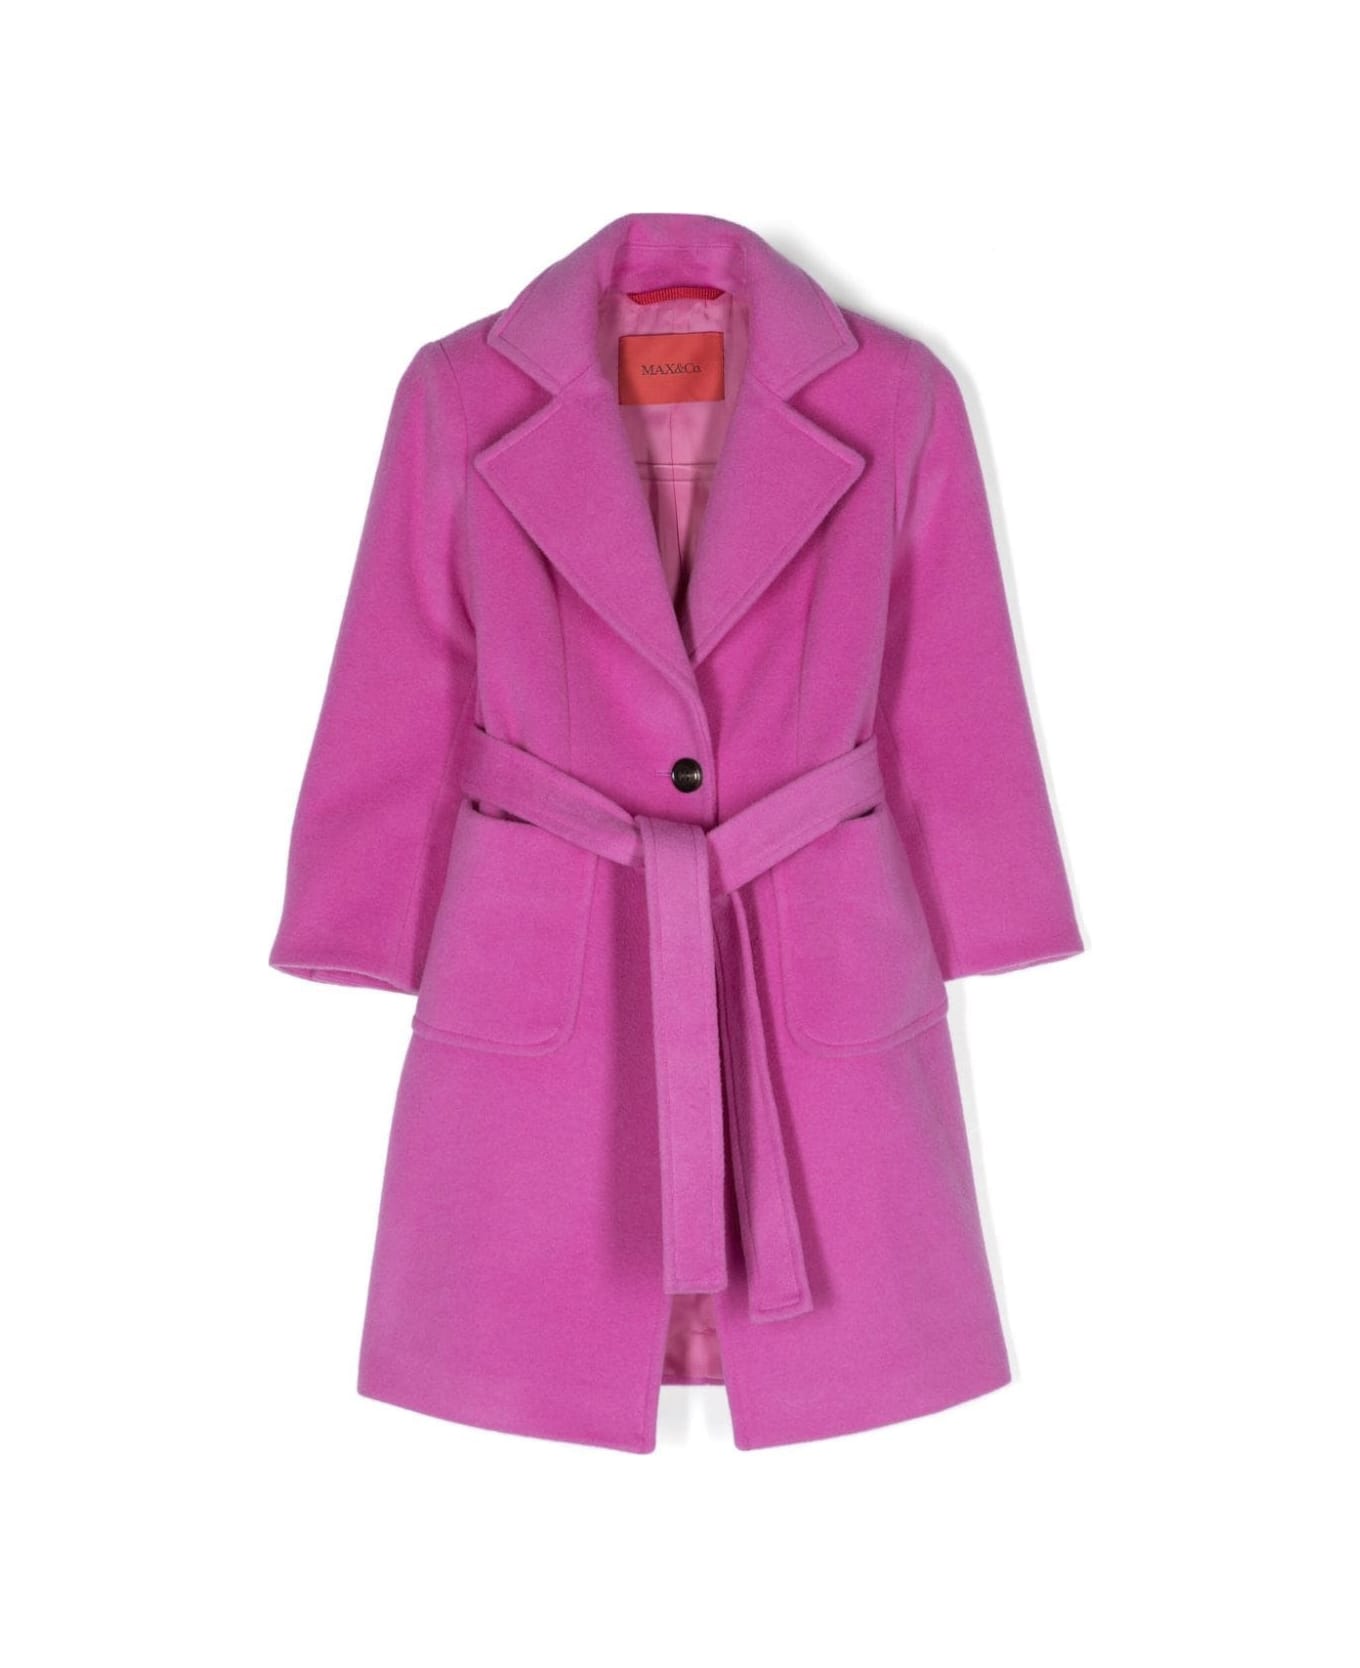 Max&Co. Fuchsia Wool Runaway Coat - Pink